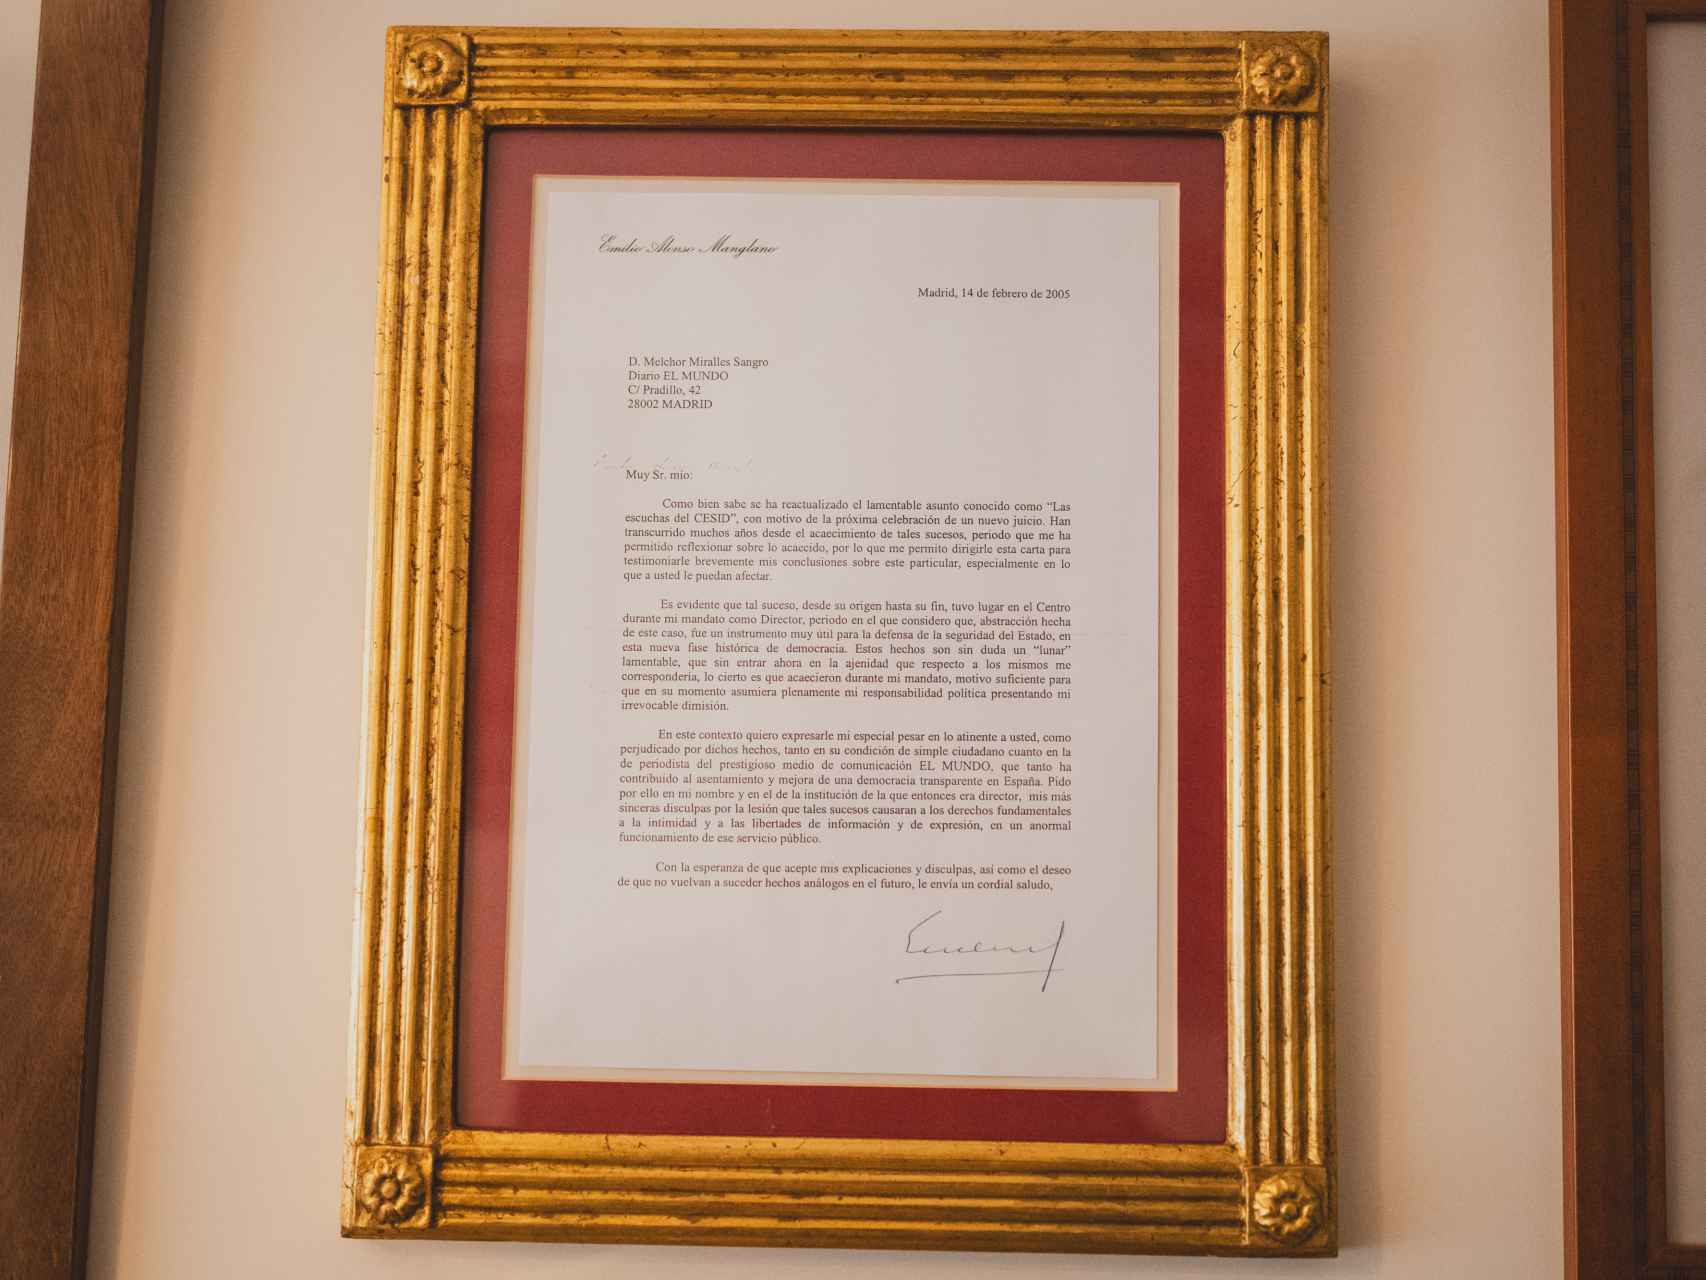 La carta de disculpas enviada por Manglano a Melchor Miralles.